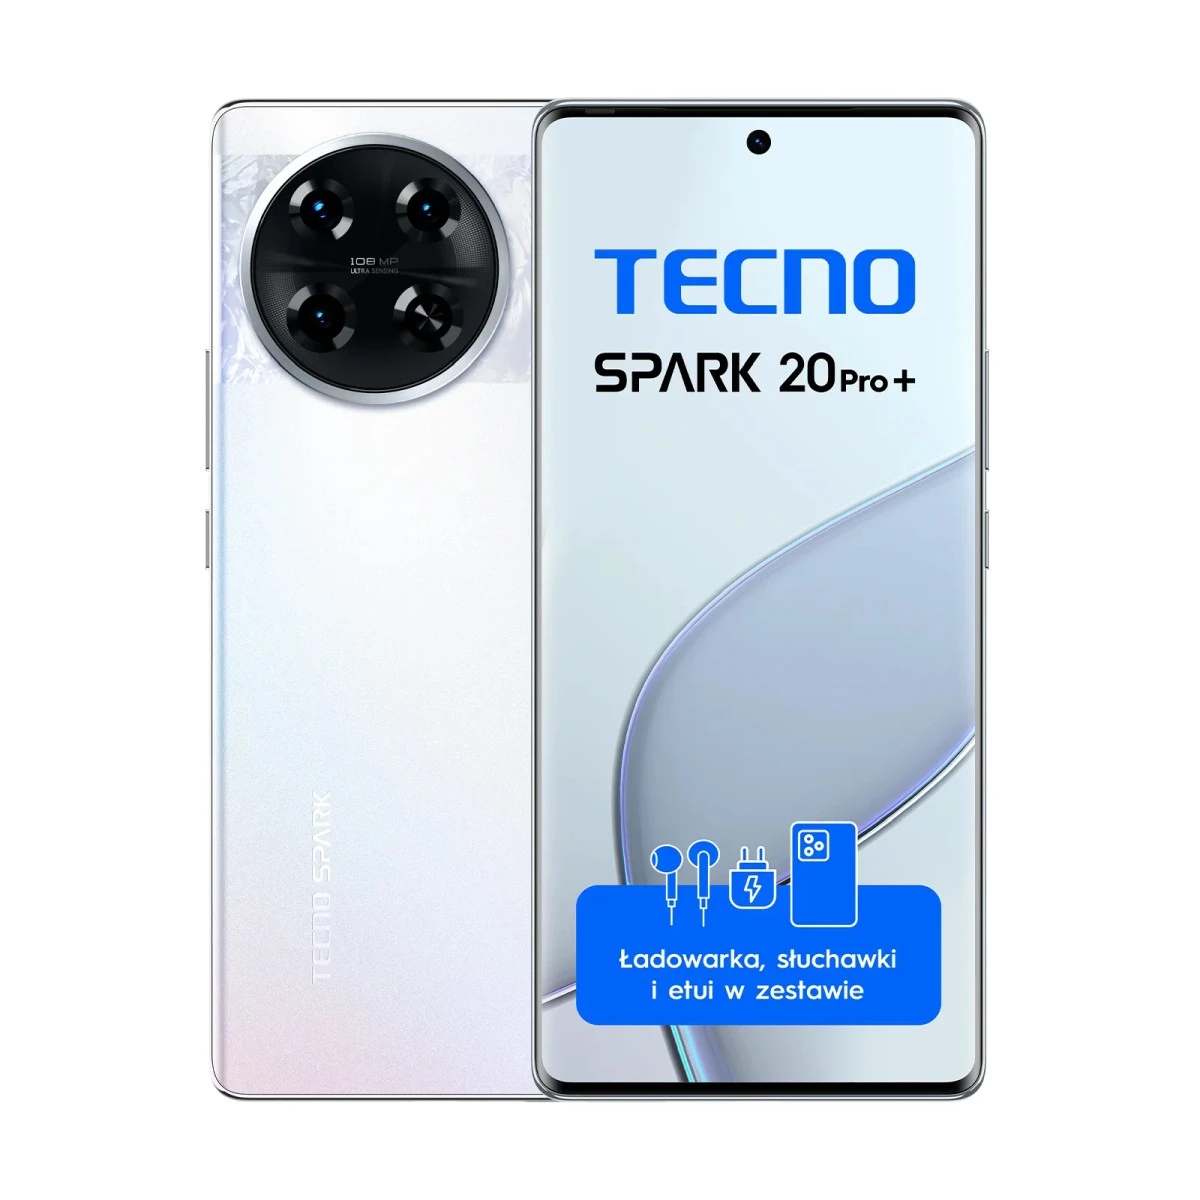 TECNO Spark 20 Pro+ promocja